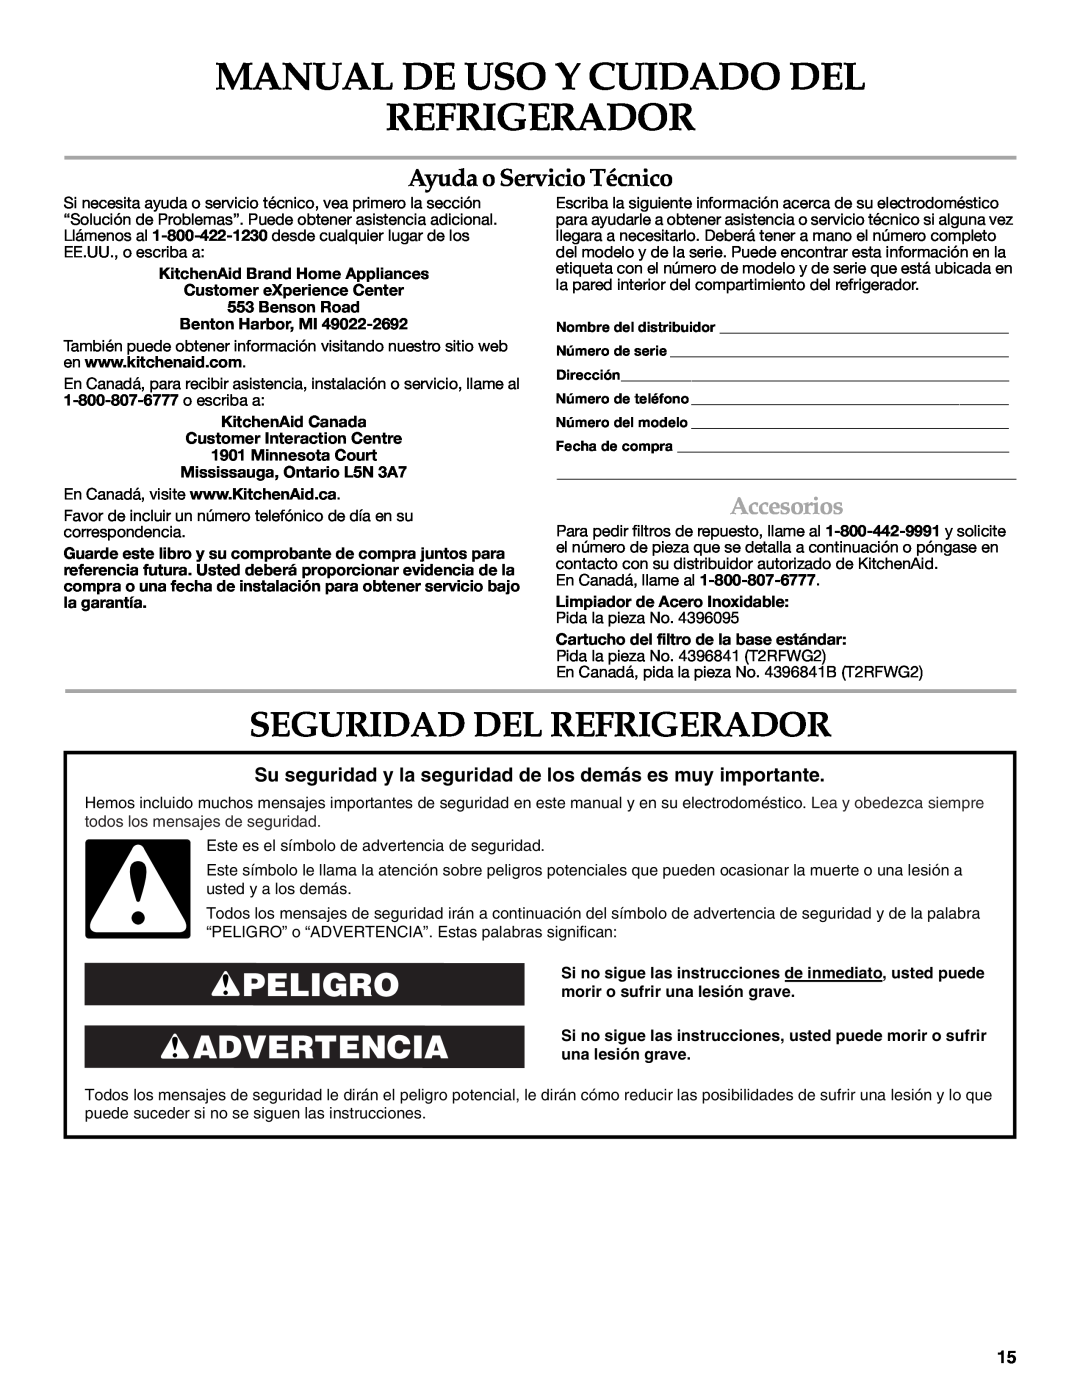 KitchenAid 2308392 Manual De Uso Y Cuidado Del Refrigerador, Seguridad Del Refrigerador, Peligro Advertencia, Accesorios 